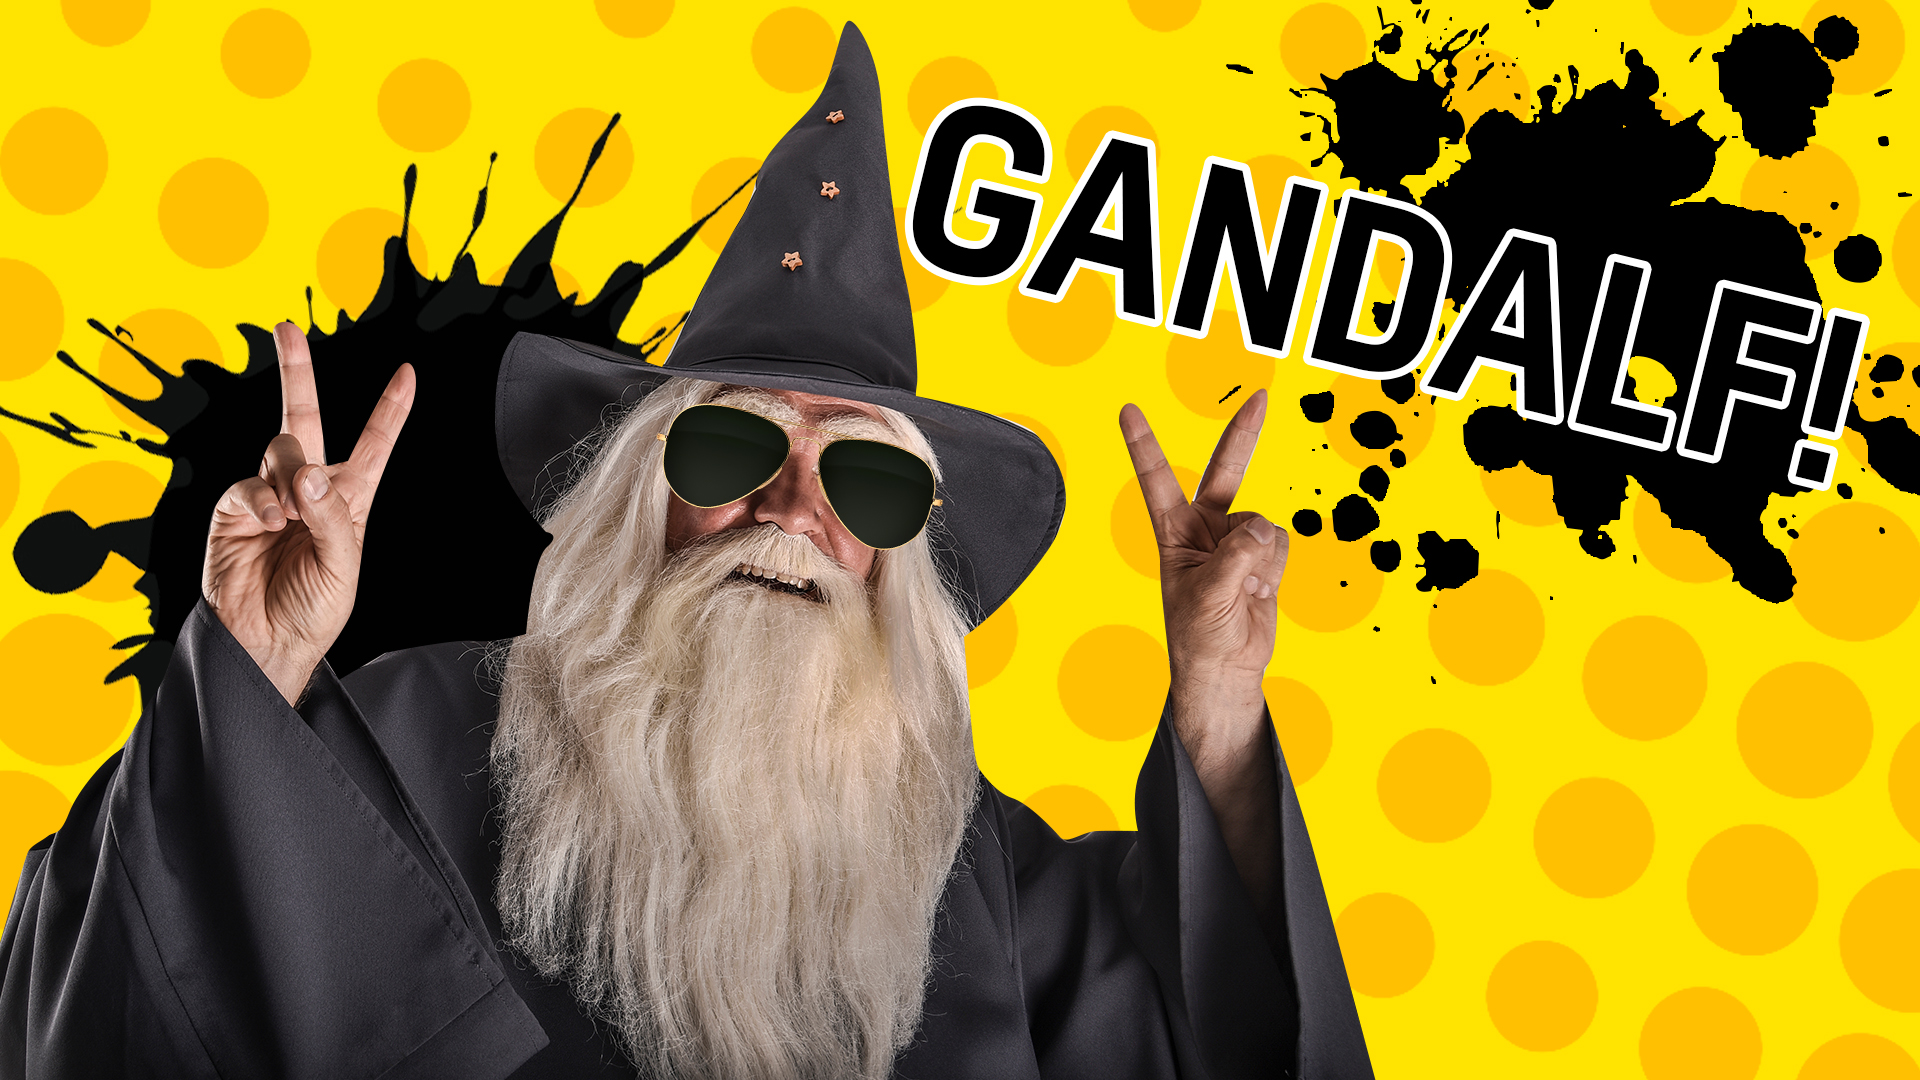 Result: Gandalf